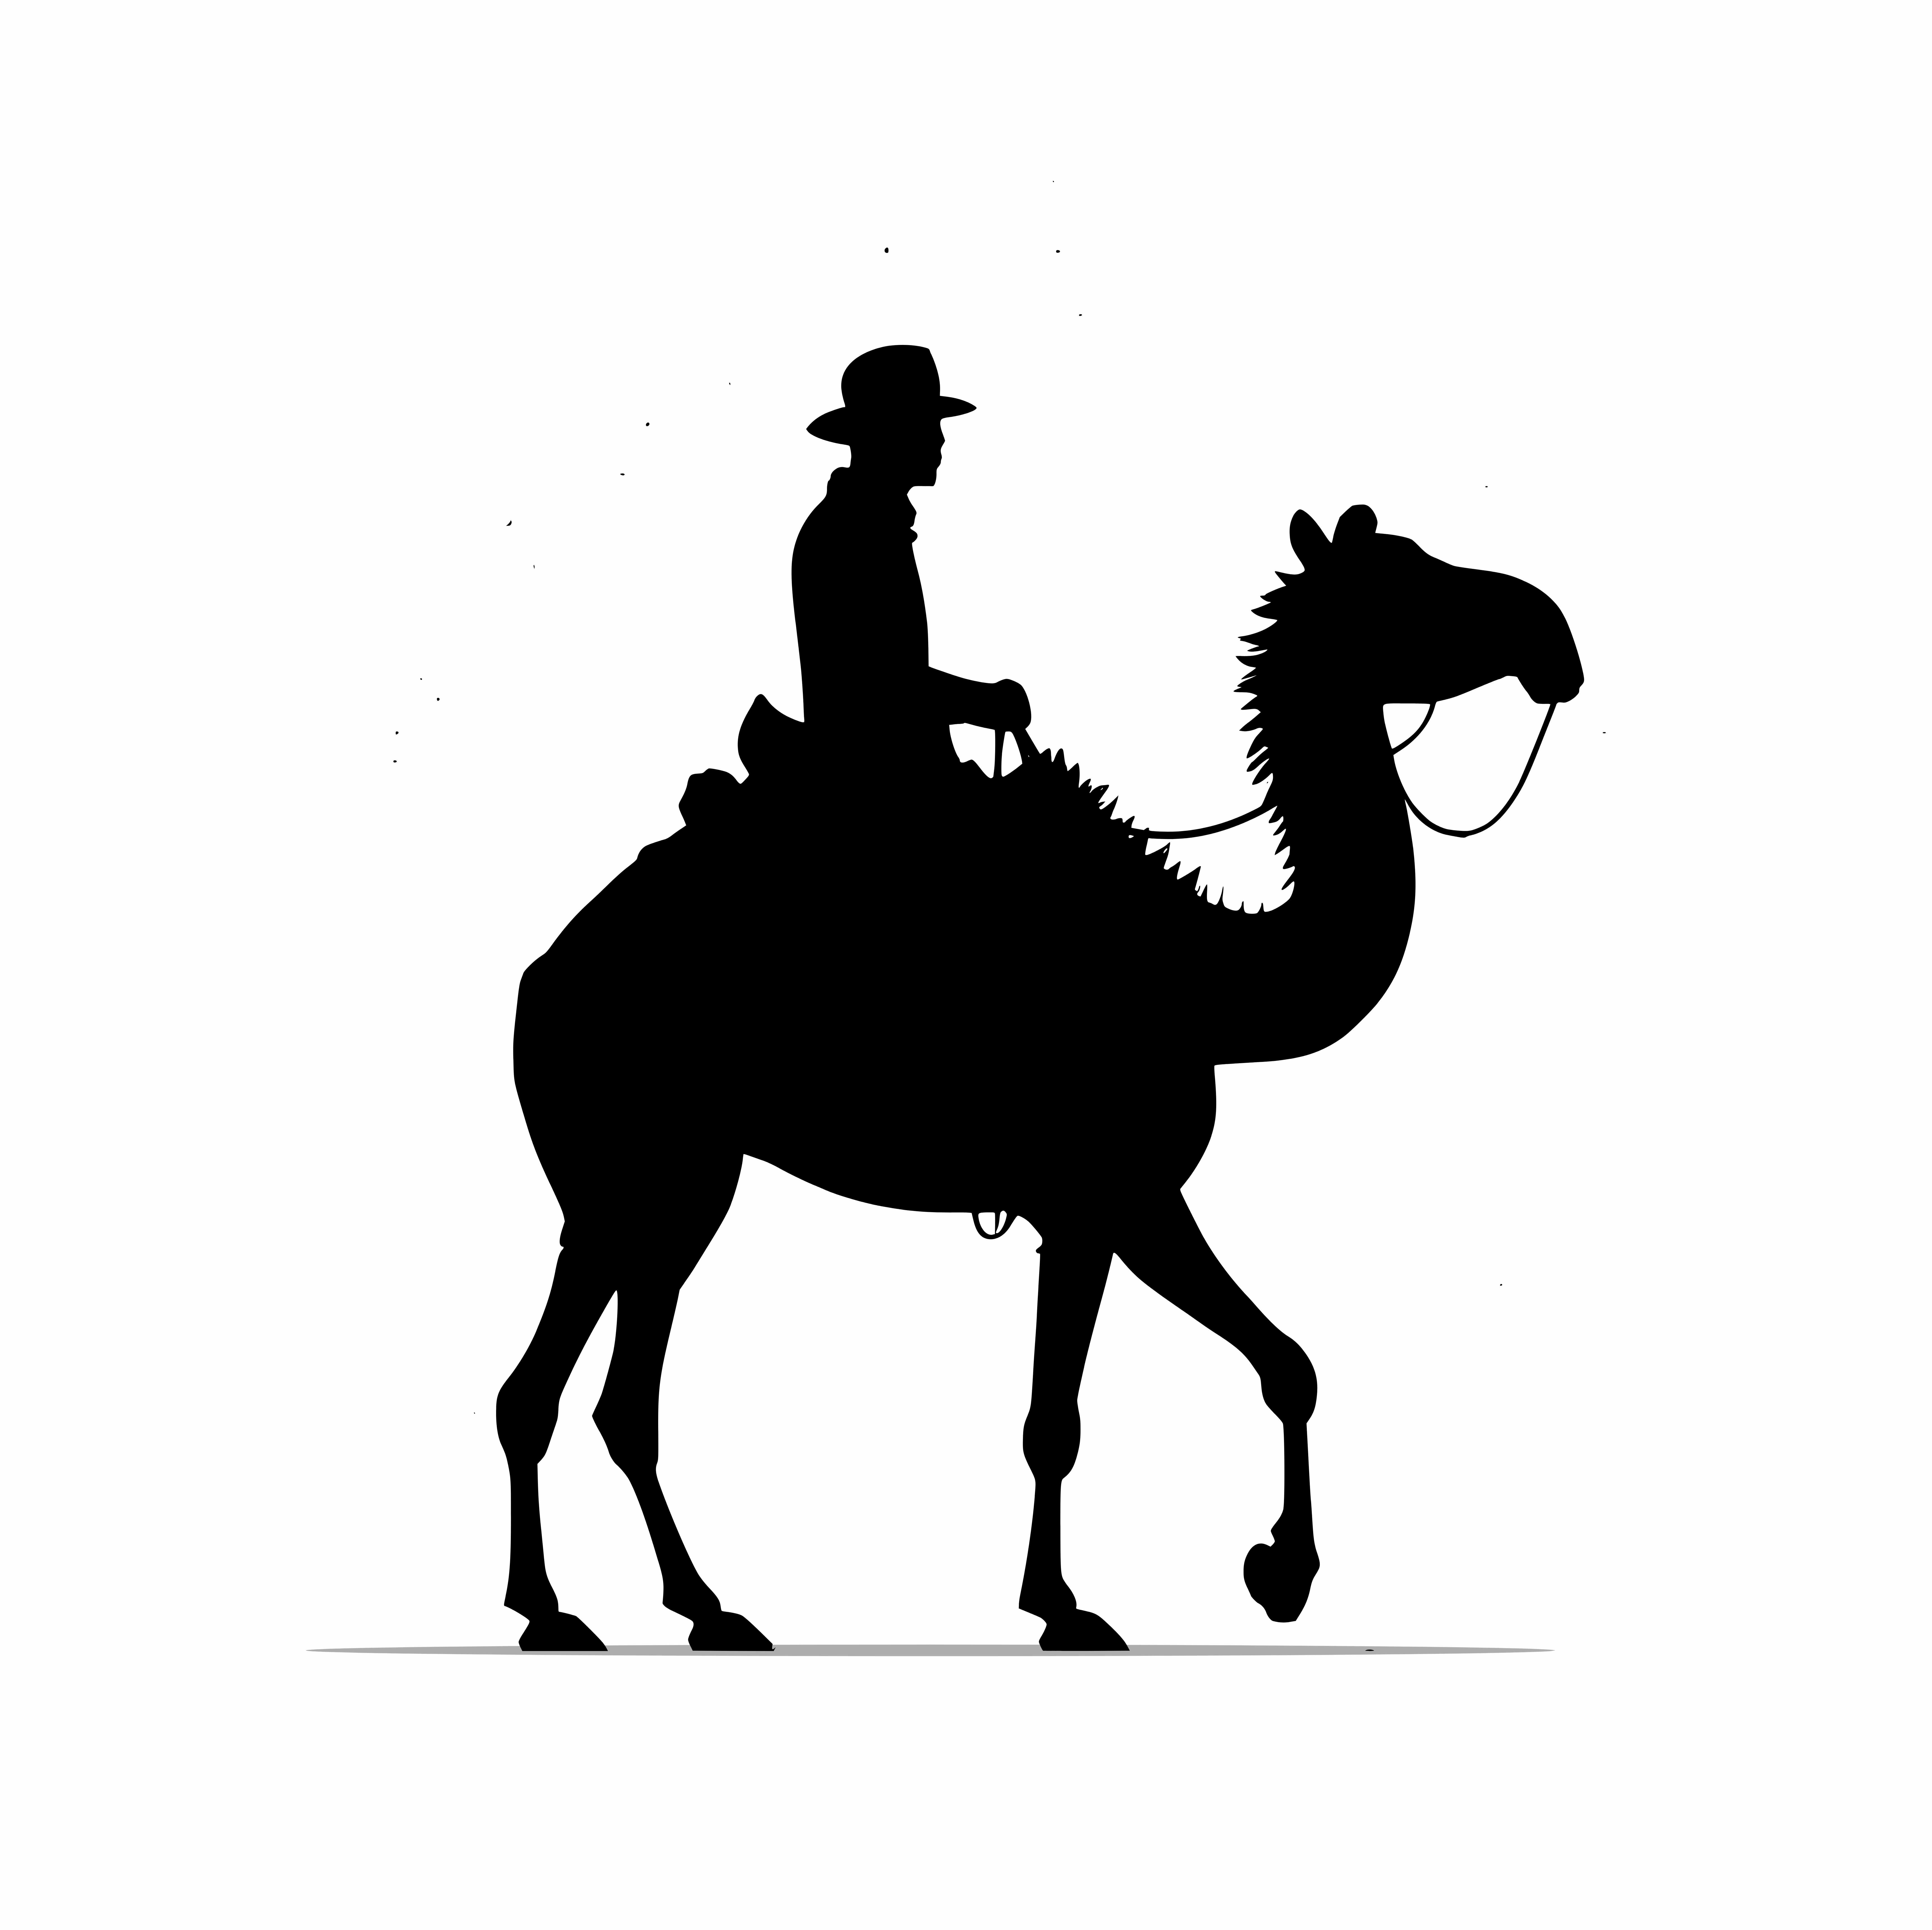 Camel riding silhouette design